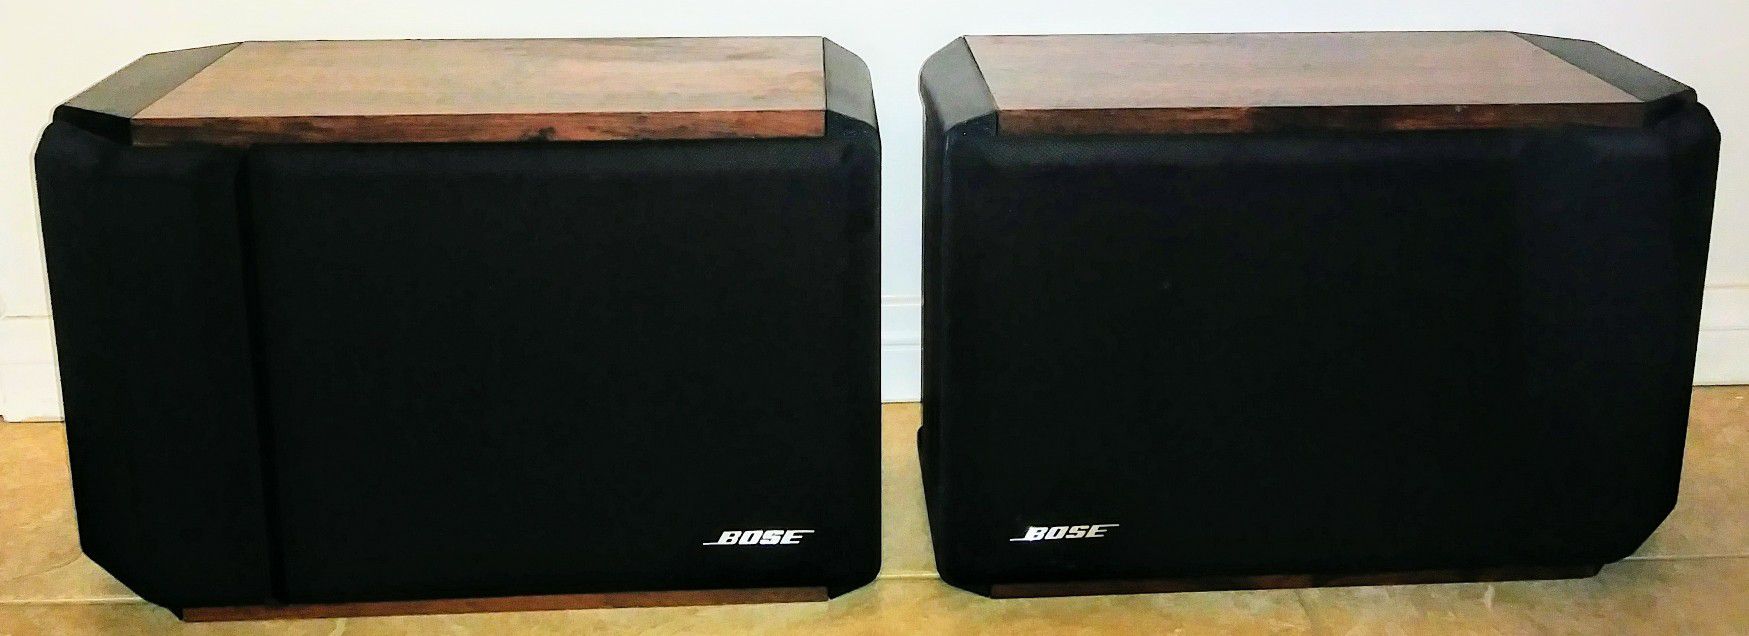 Bose 201 IV Series